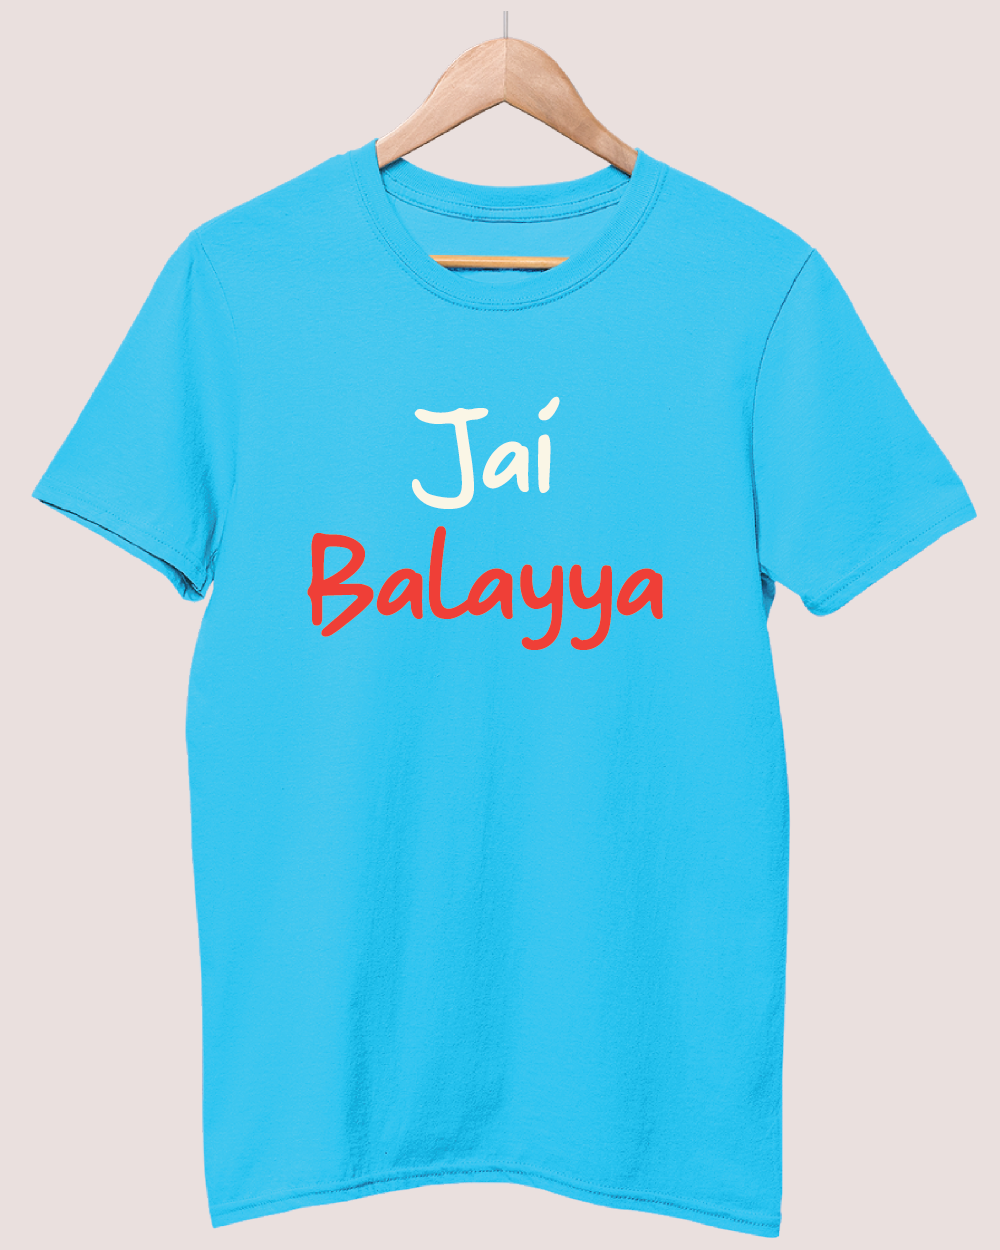 Jai Balayya T-shirt